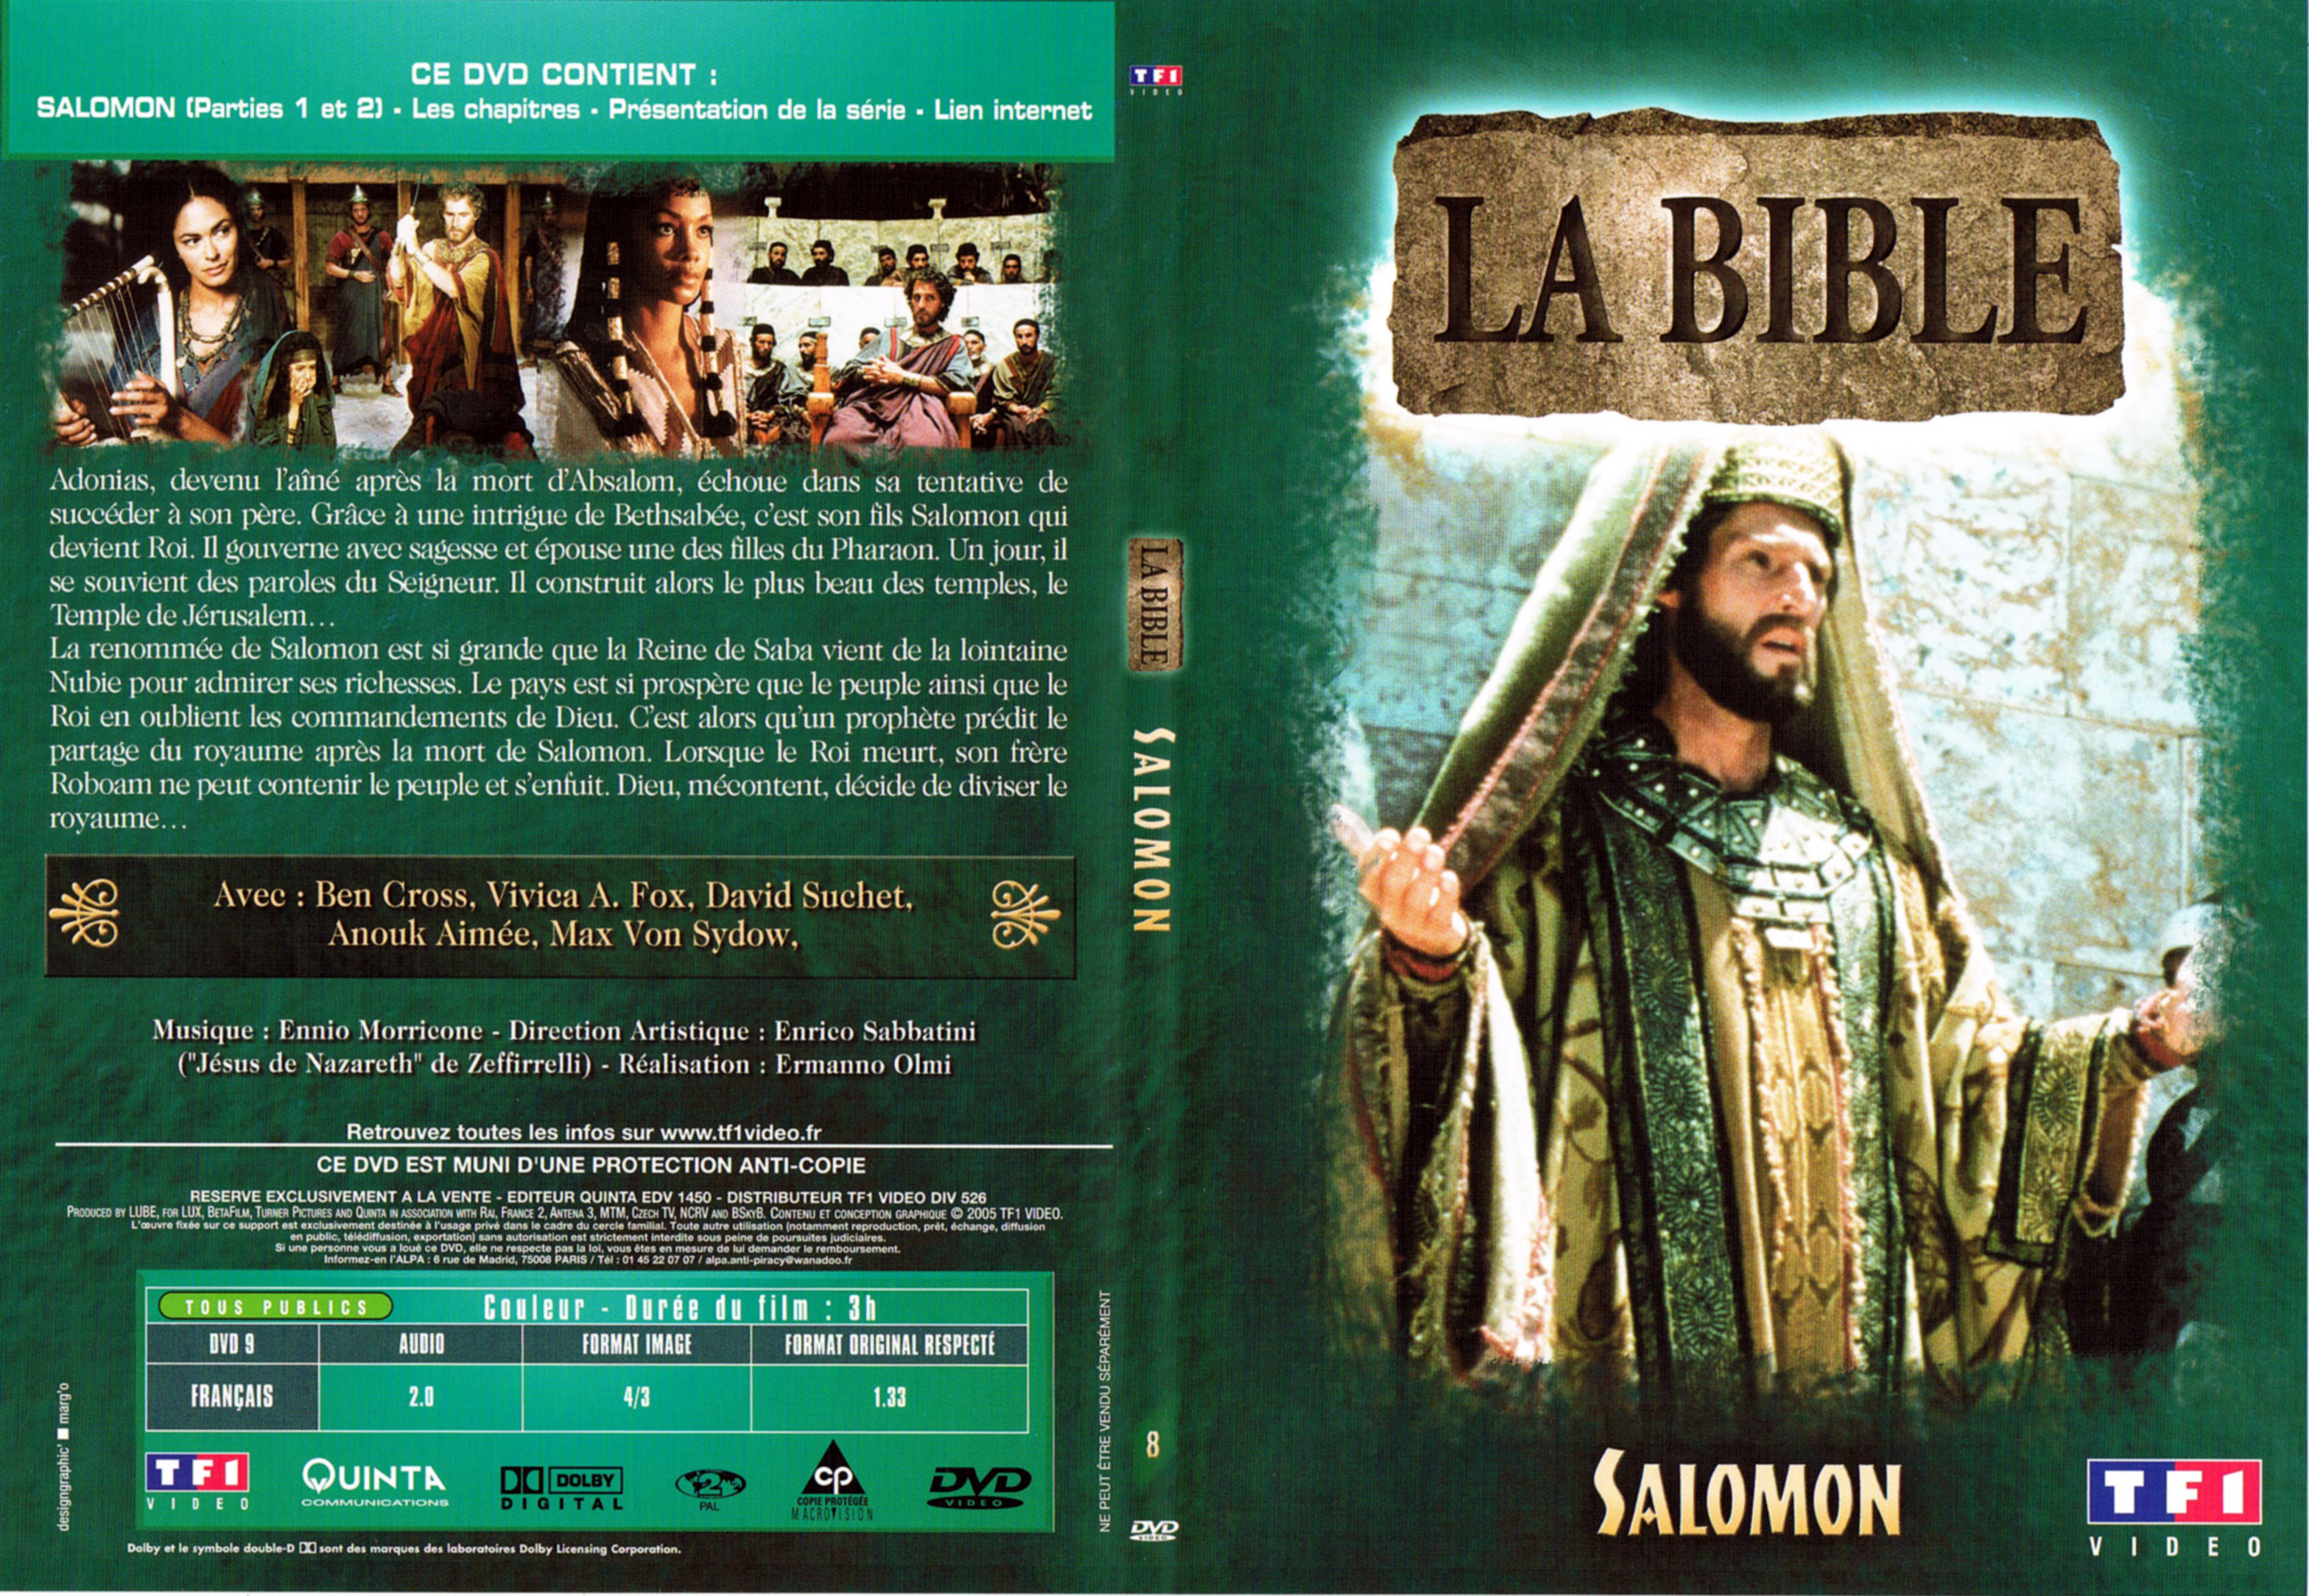 Jaquette DVD La bible - Salomon